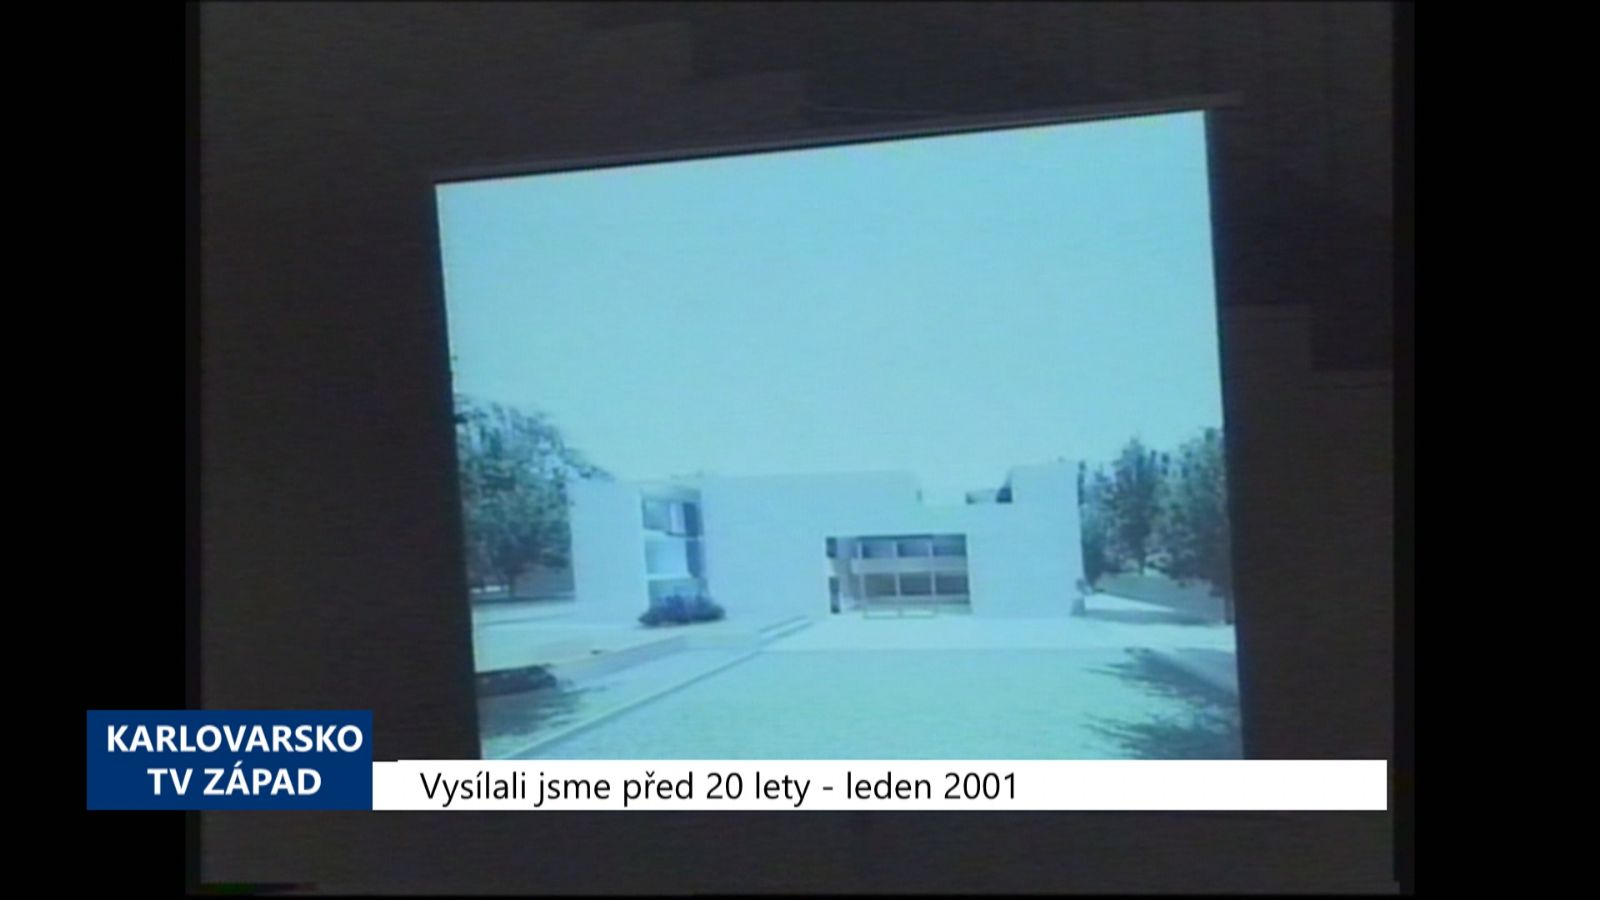 2001 – Cheb: Výstava představila práce mladých architektů (TV Západ)